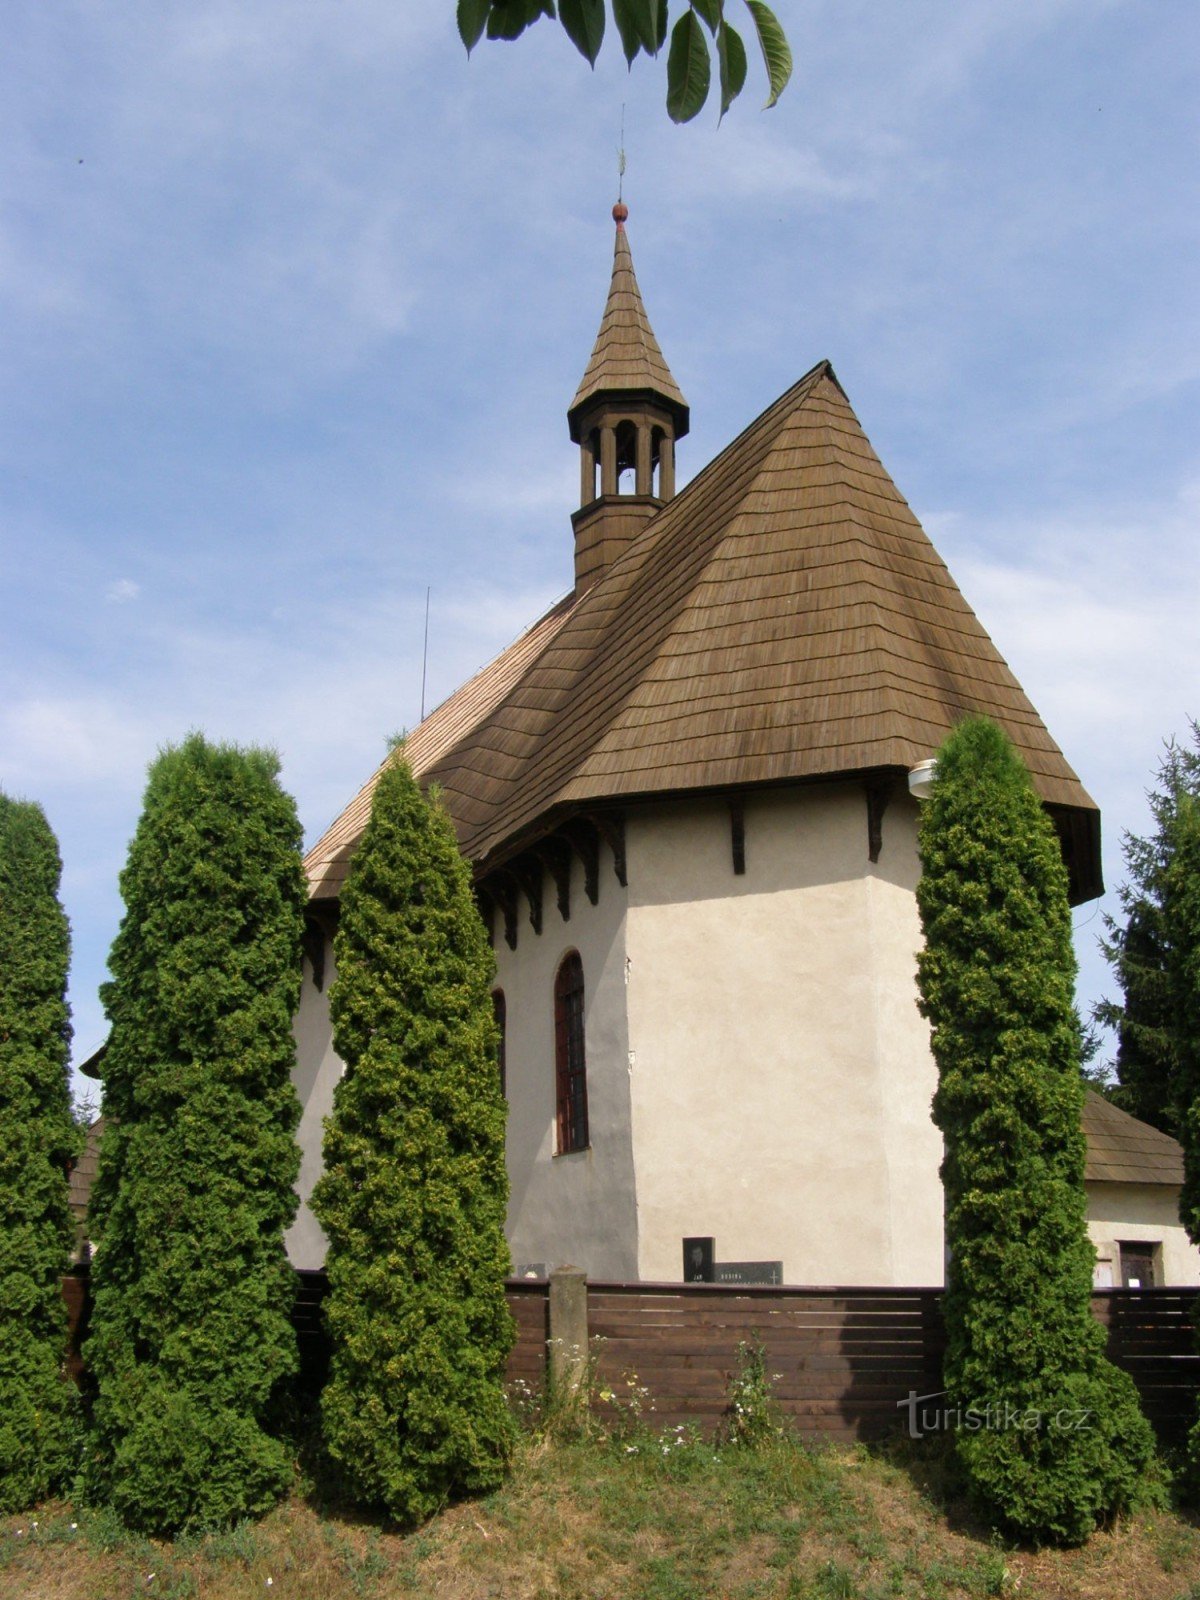 Kozojedy - church of St. Wenceslas